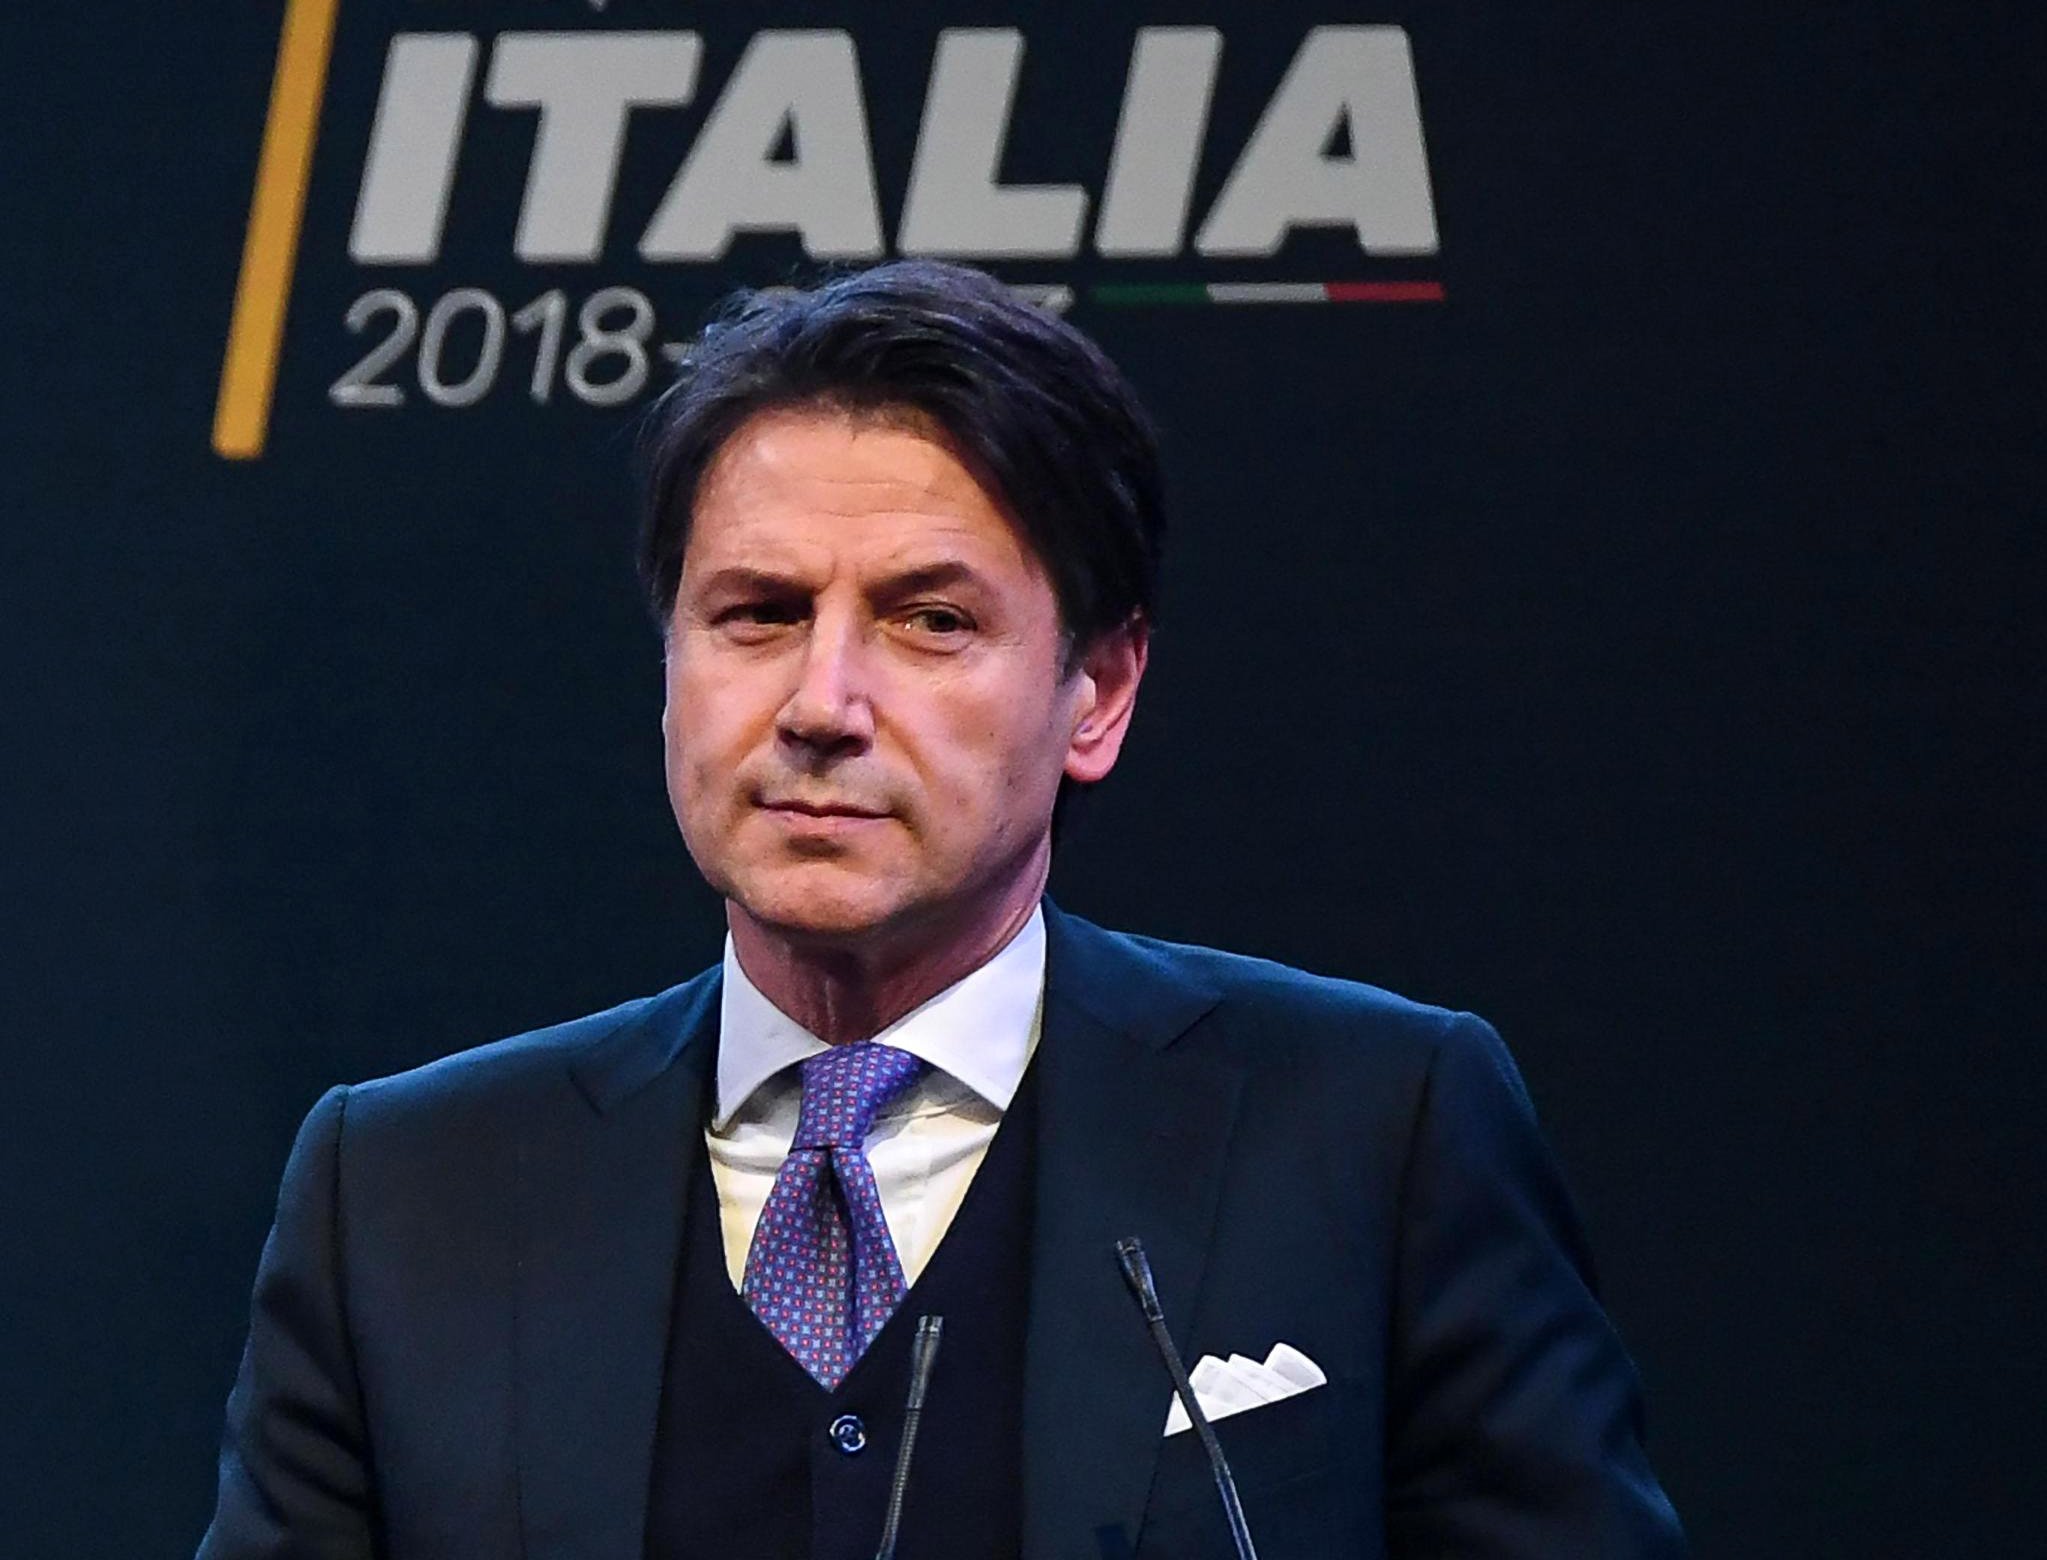 Jurista Giuseppe Conte renuncia à tarefa de formar novo Governo em Itália